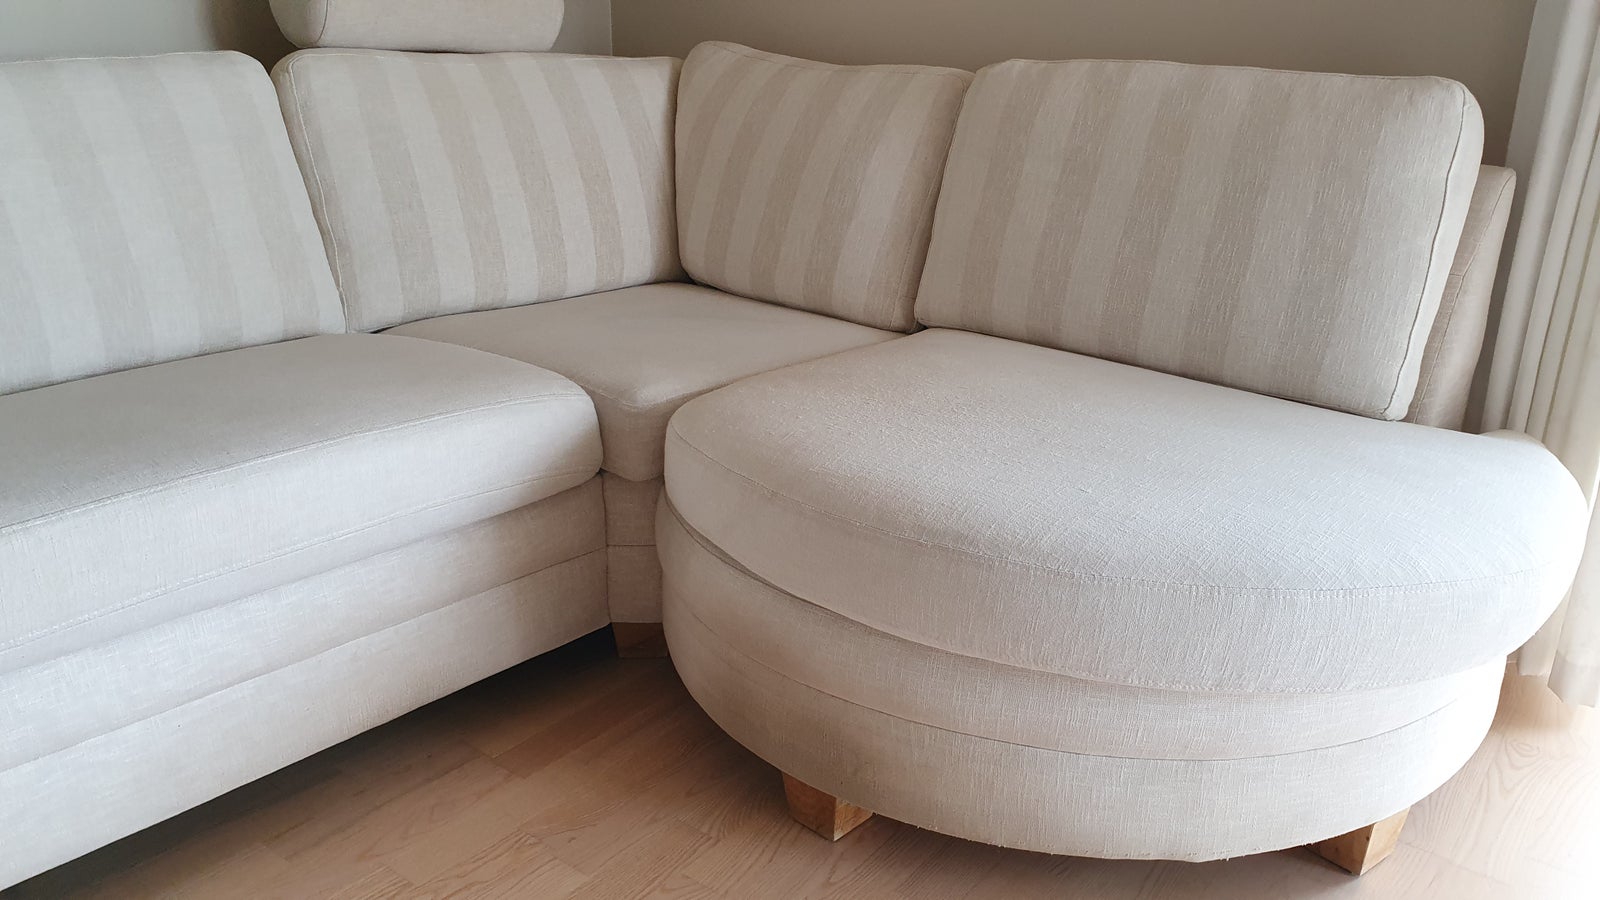 Sofa med højrevendt chaiselong